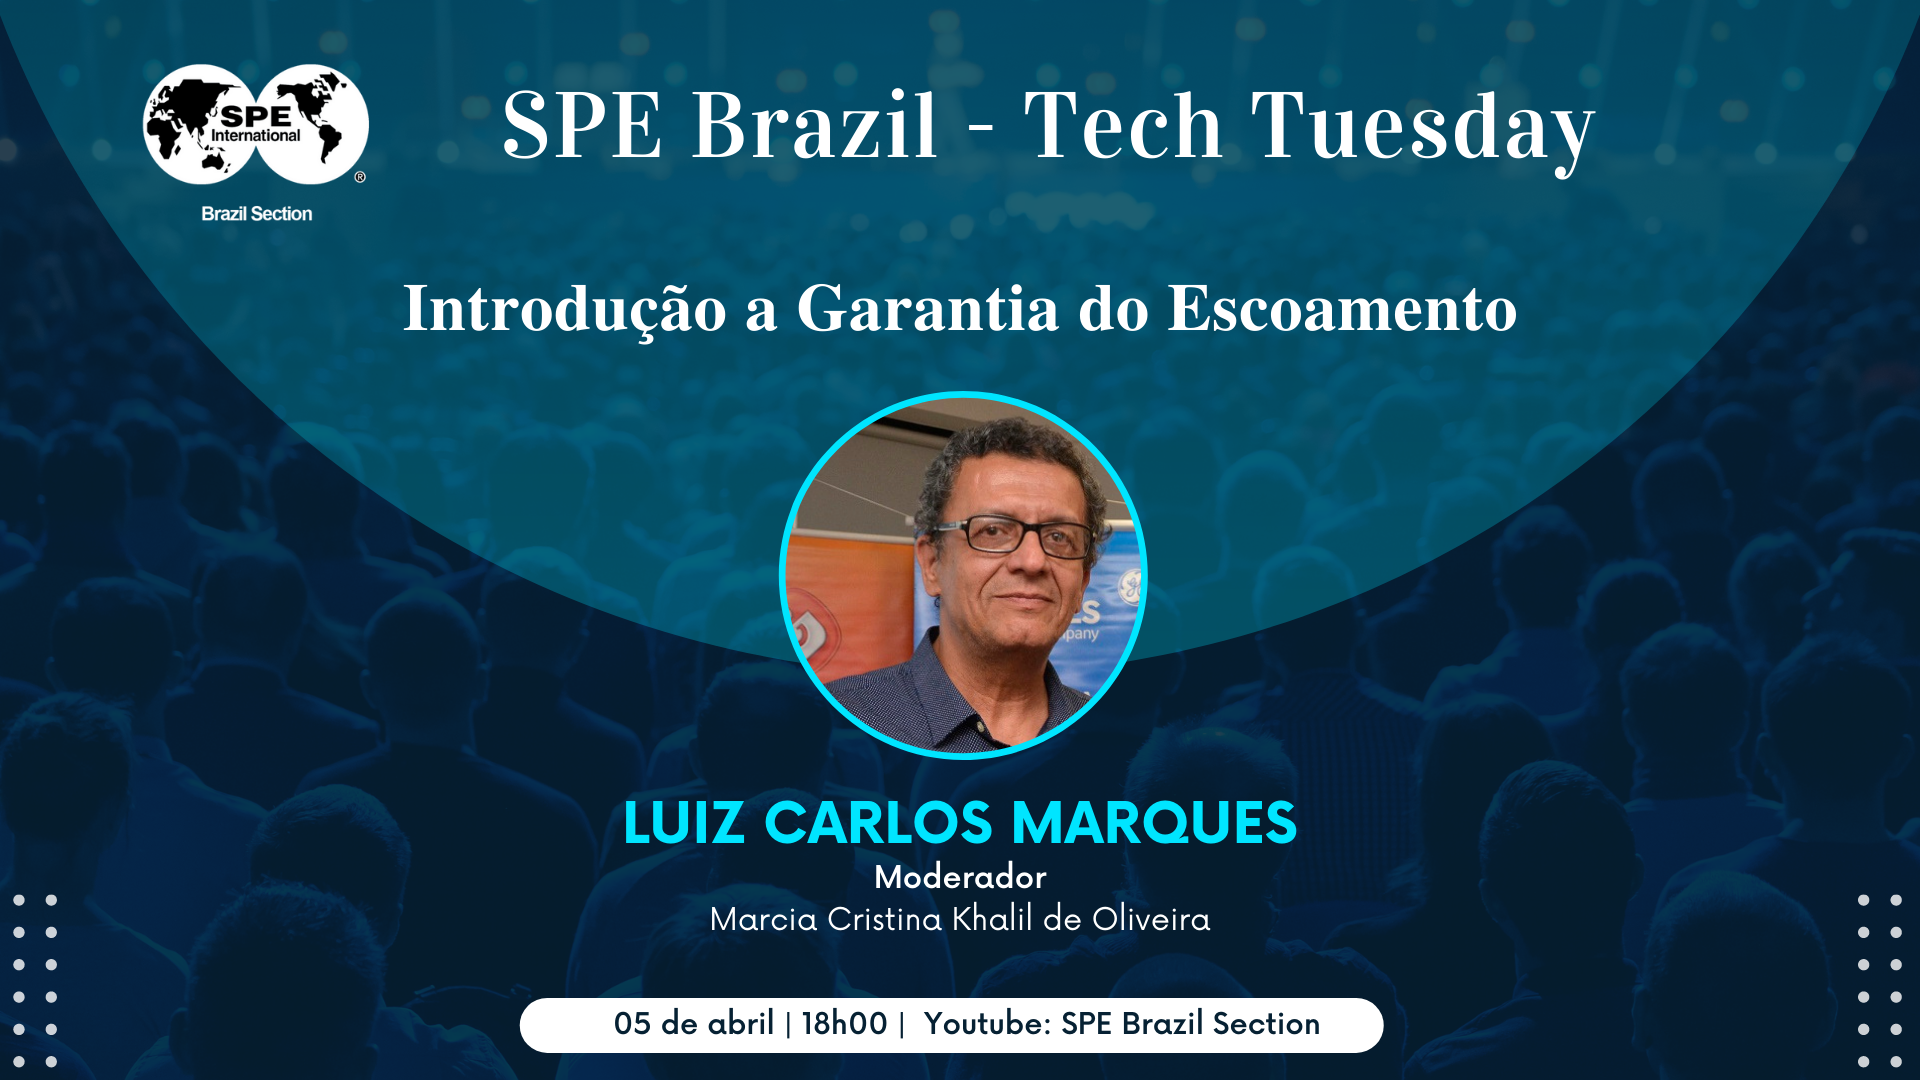 SPE Brazil Tech Tuesday: “Introdução a Garantia do Escoamento”